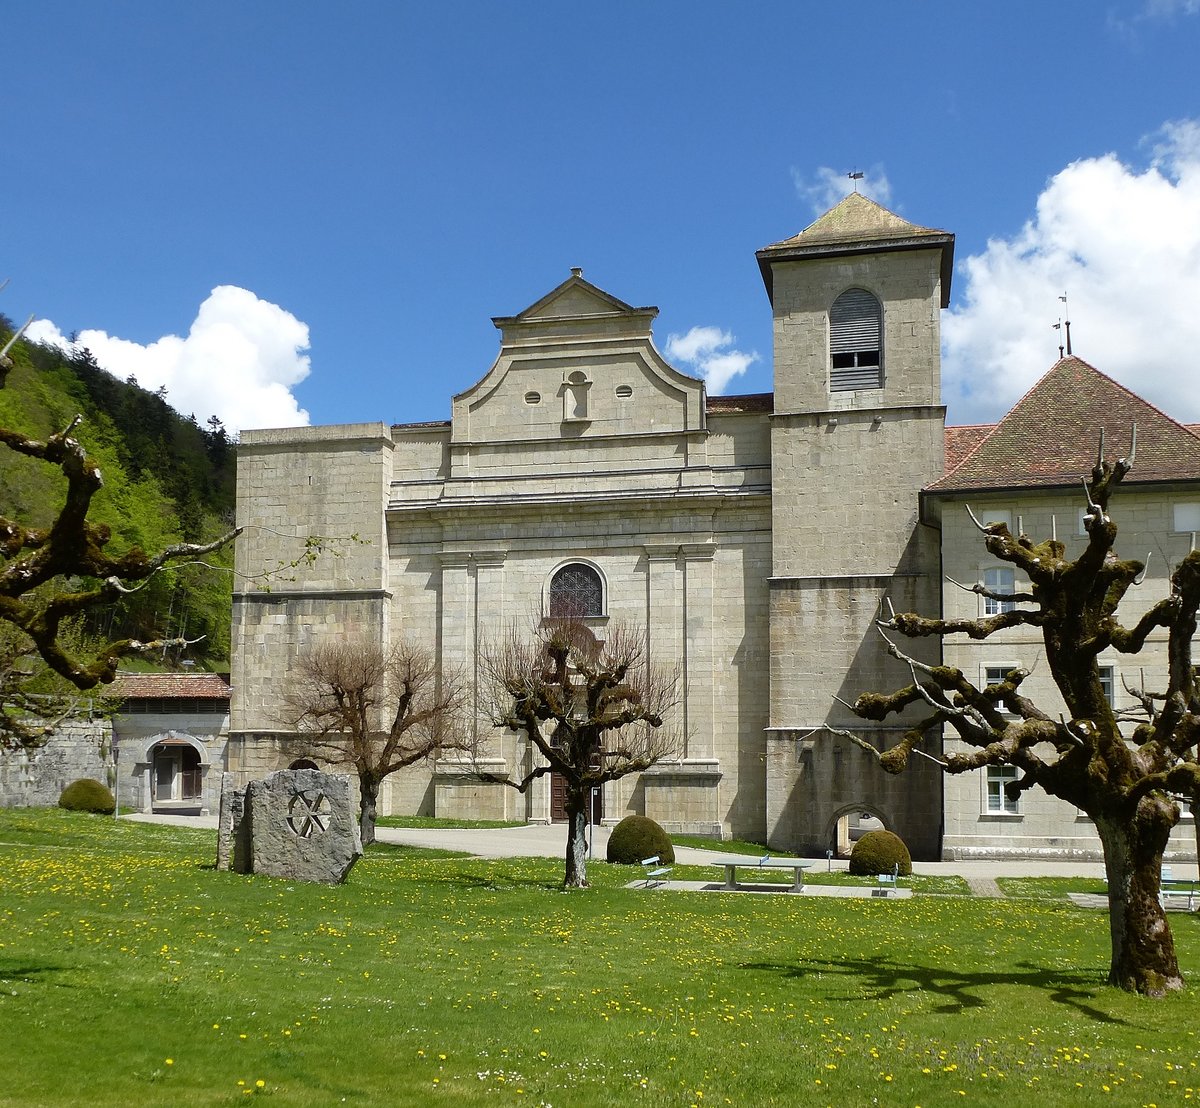 Bellelay, die Westfassade der Klosterkirche Mari Himmelfahrt, 1708-14 vom Vorarlberger Baumeister Franz Beer erbaut, die zwei gedrungenen Frontrme besaen ehemals eine Zwiebelhaube, Mai 2017